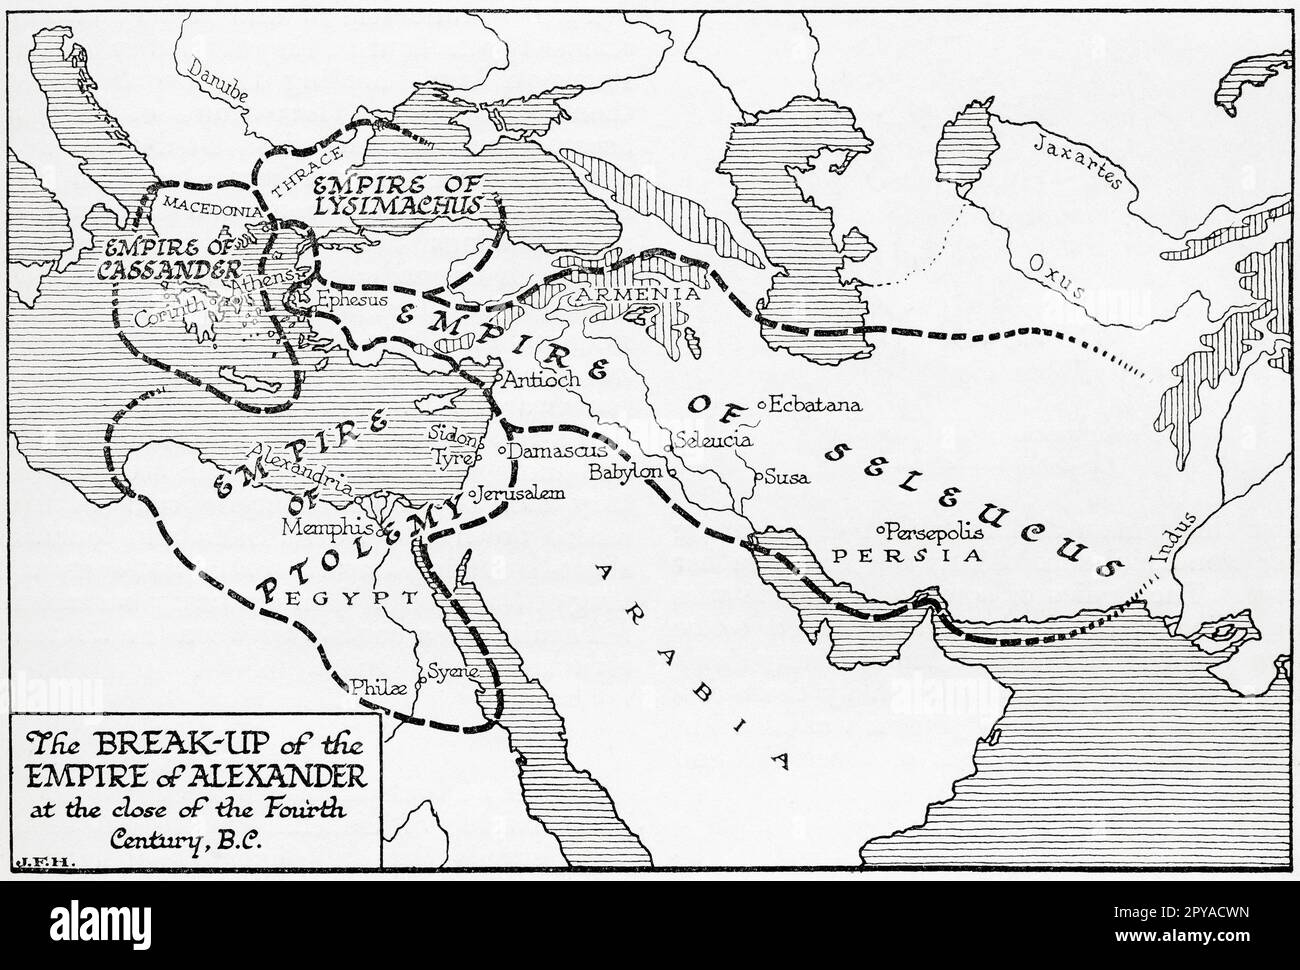 Mappa che mostra la rottura dell'impero di Alessandro il Grande alla fine del 4th ° secolo AC. Dal libro Outline of History di H.G. Wells, pubblicato nel 1920. Foto Stock